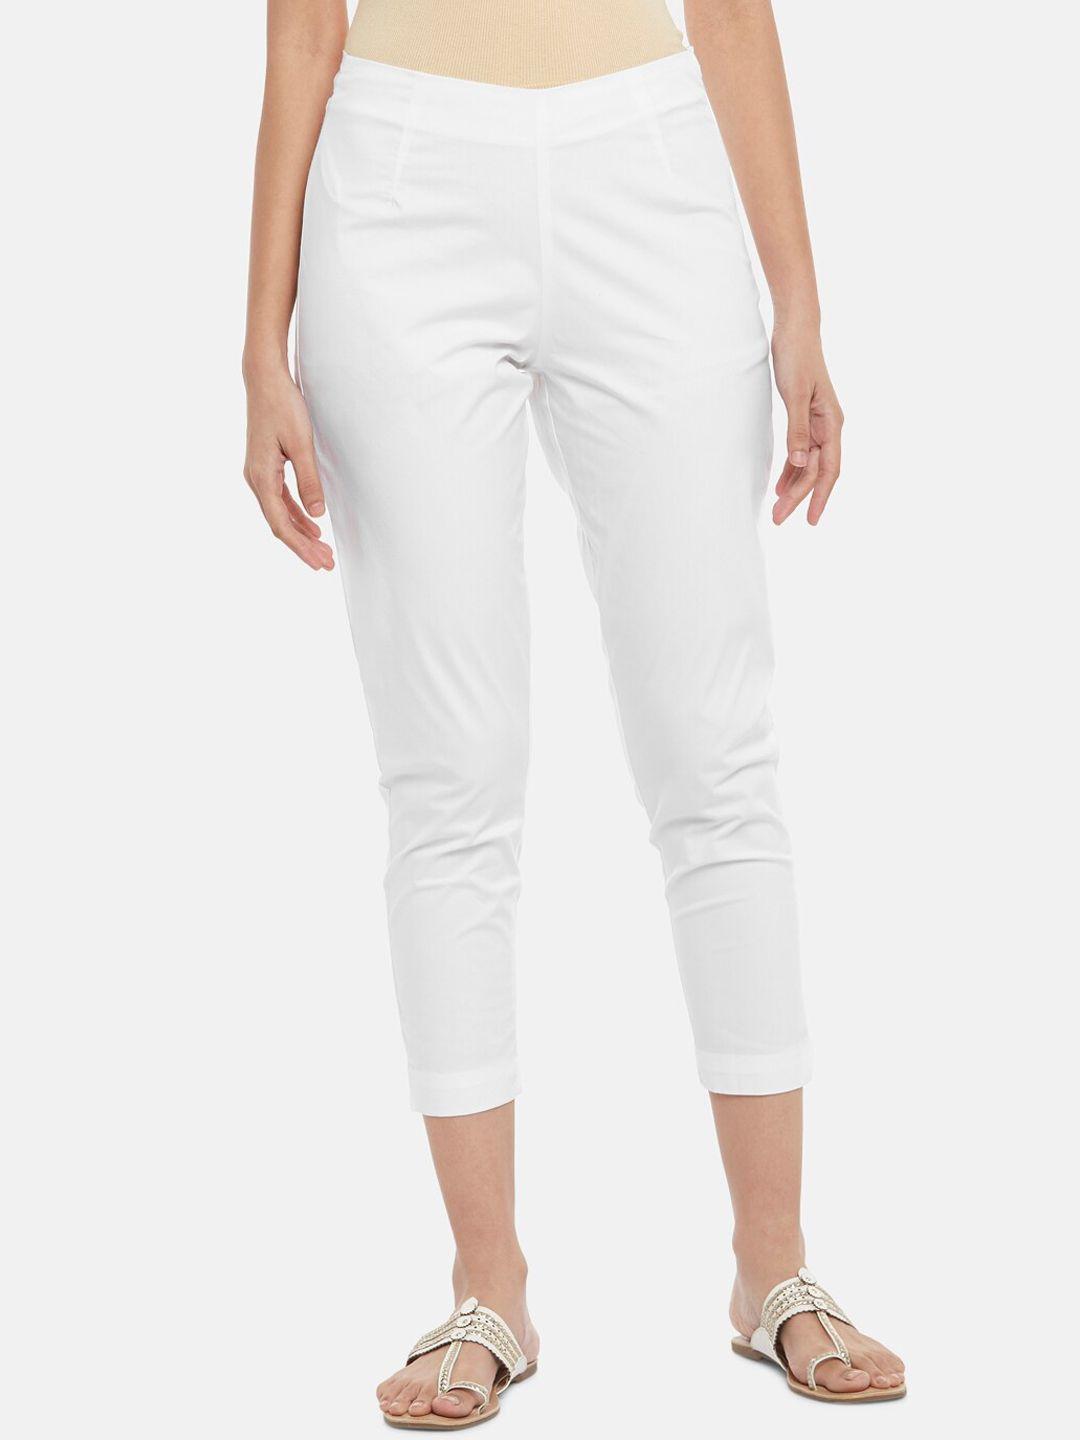 rangmanch by pantaloons women white trousers